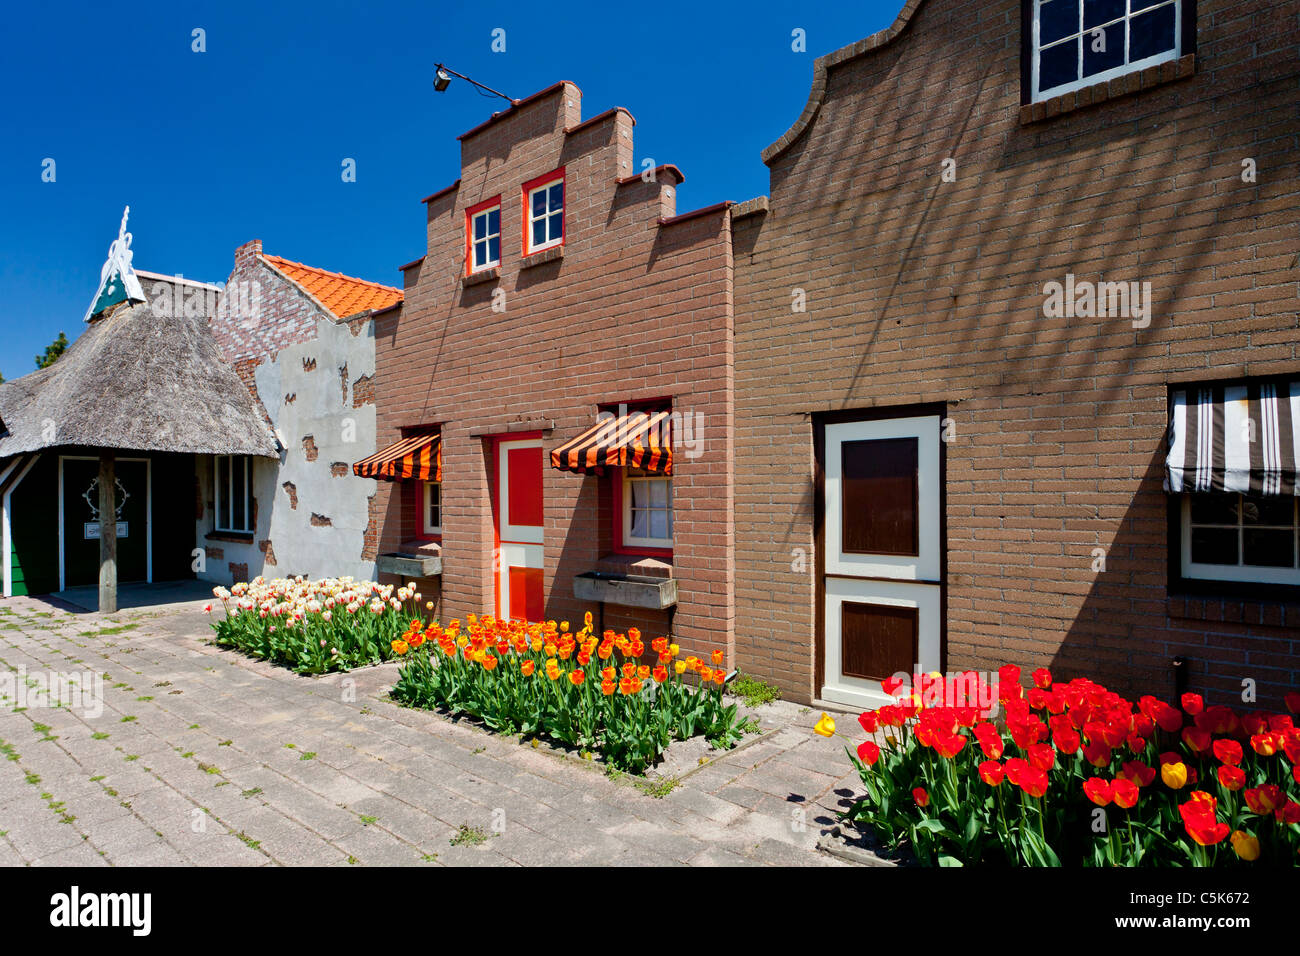 L'architecture et de commerces de la Dutch Village attraction touristique de Holland, Michigan, États-Unis. Banque D'Images